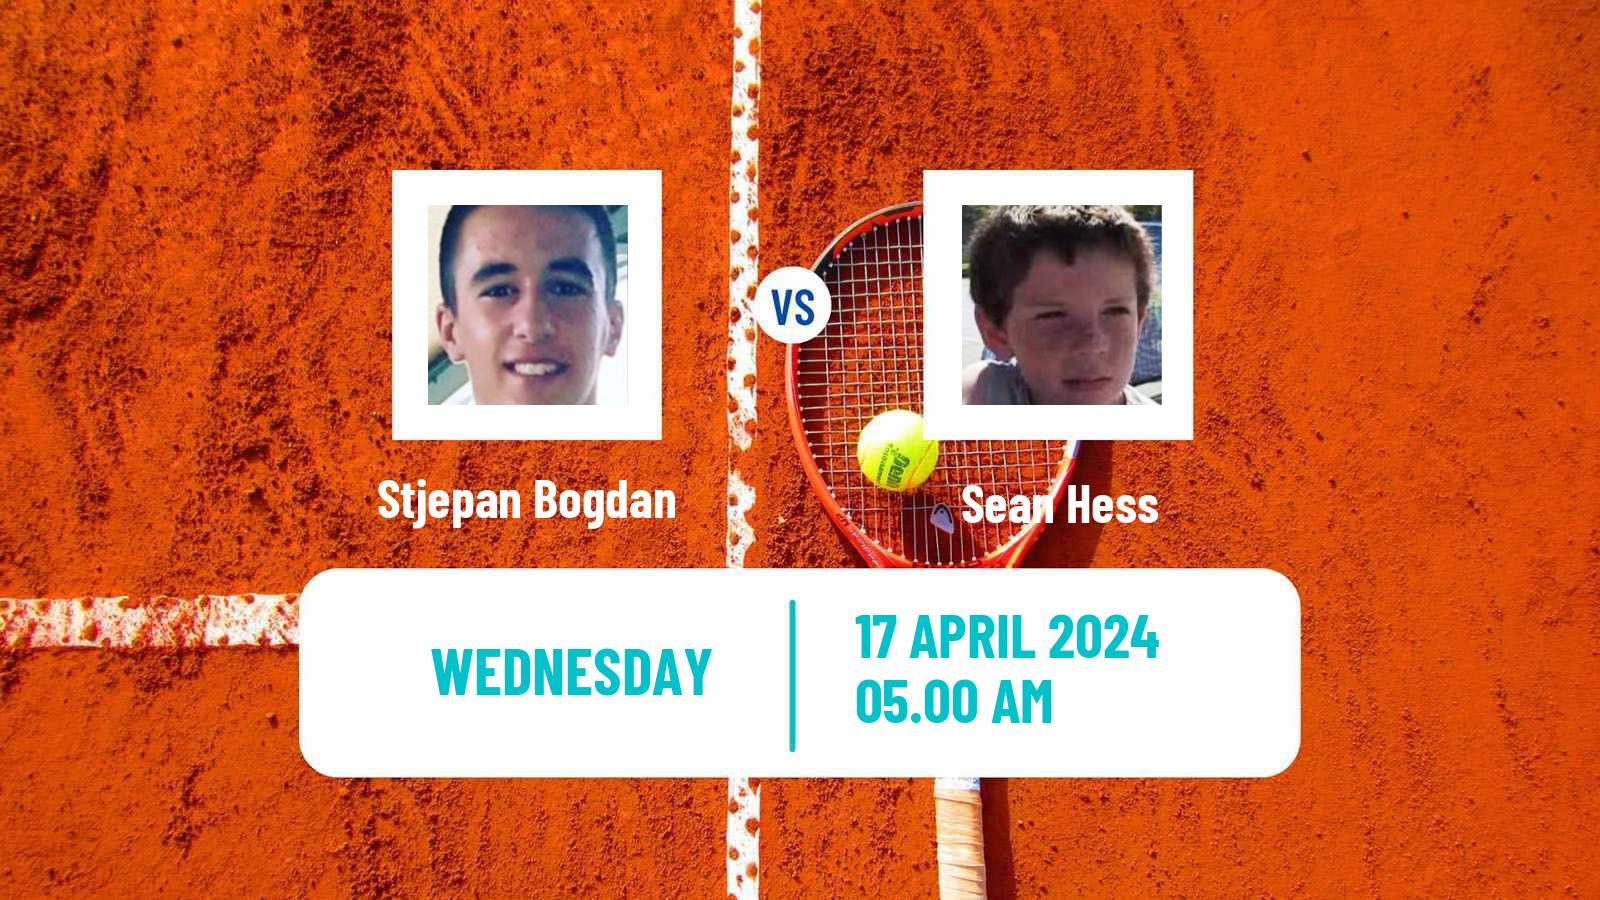 Tennis ITF M15 Dubrovnik Men Stjepan Bogdan - Sean Hess